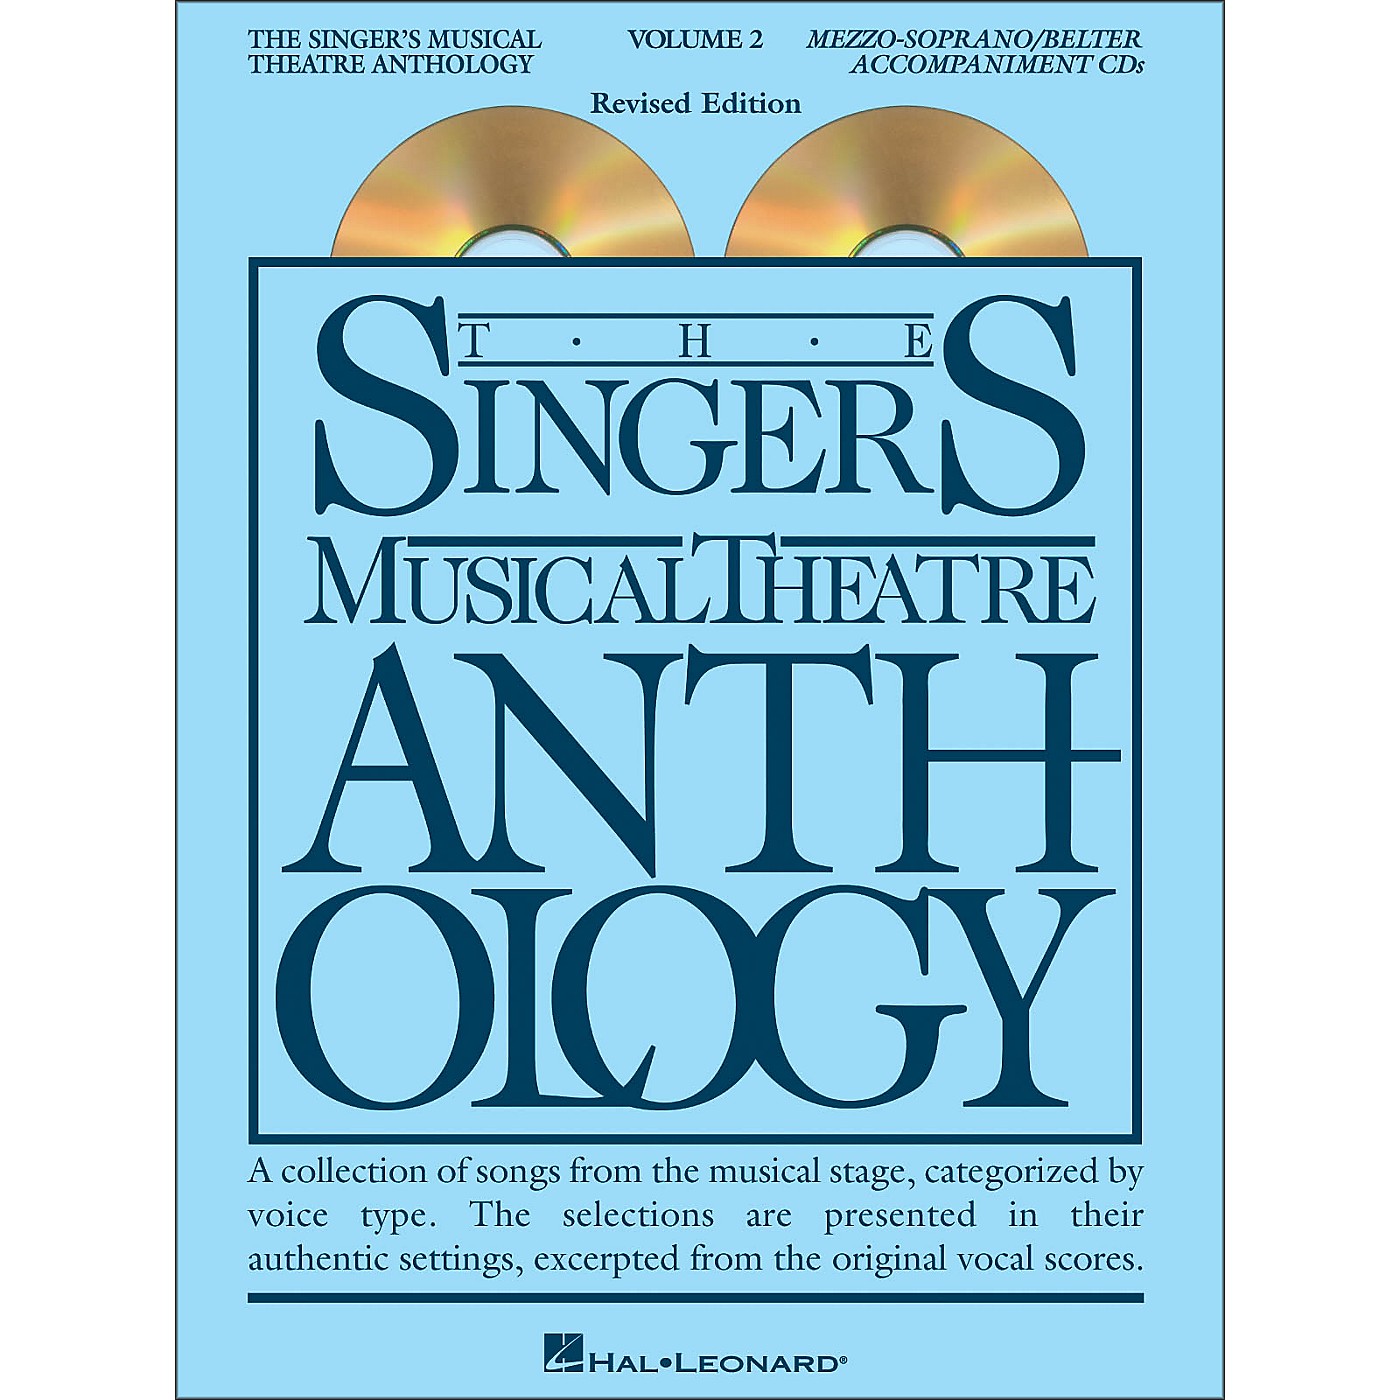 Hal Leonard Singer's Musical Theatre Anthology for Mezzo-Soprano / Belter Volume 2 2CD's Accompaniment thumbnail